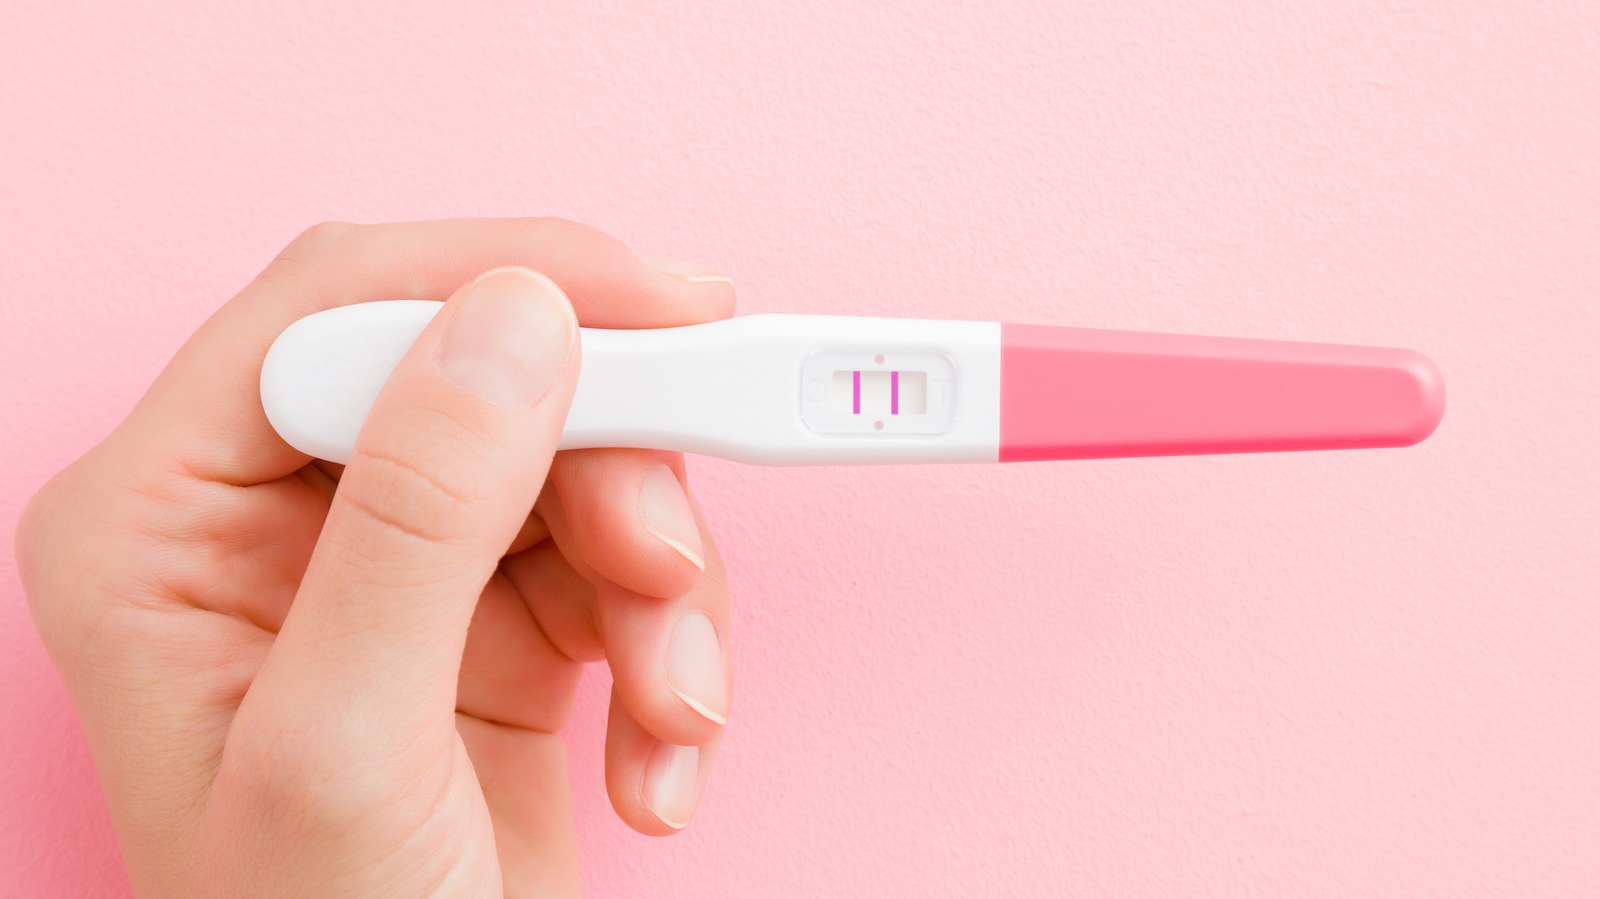 Que thử thai đang là lựa chọn số 1 của các chị em phụ nữ hiện nay để kiểm tra sự có thai. Hãy cùng xem hình ảnh que thử thai chất lượng cao với khả năng xác định nhanh chóng và chính xác cơ hội có thai của bạn. Đây là công cụ không thể thiếu trong túi đồ của phụ nữ.